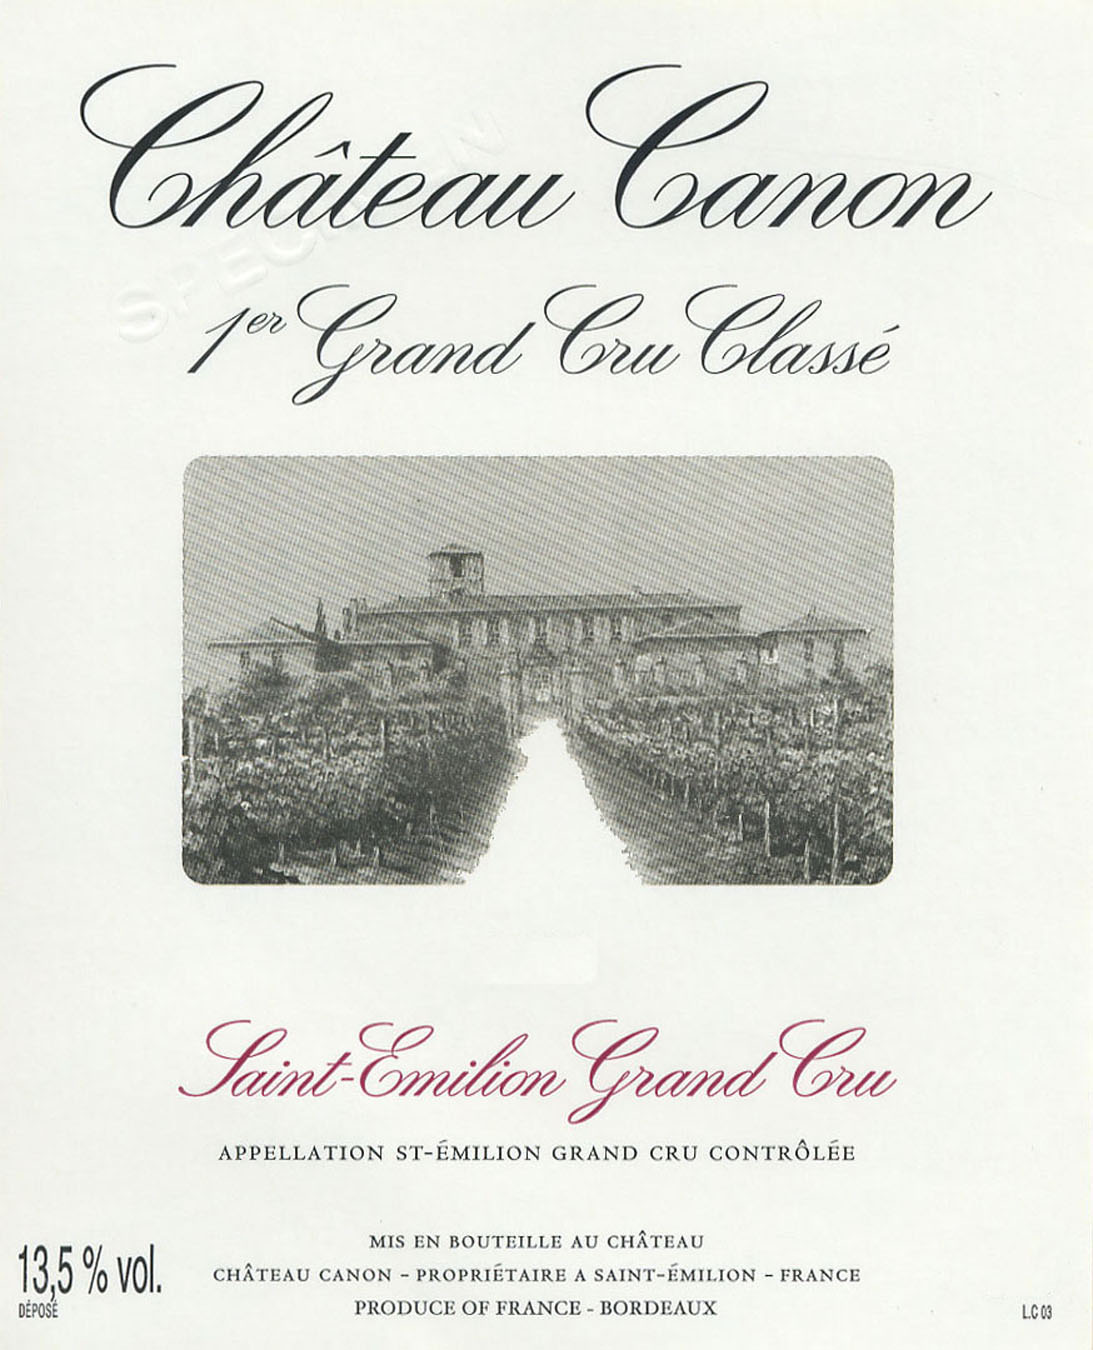 Chateau Canon label